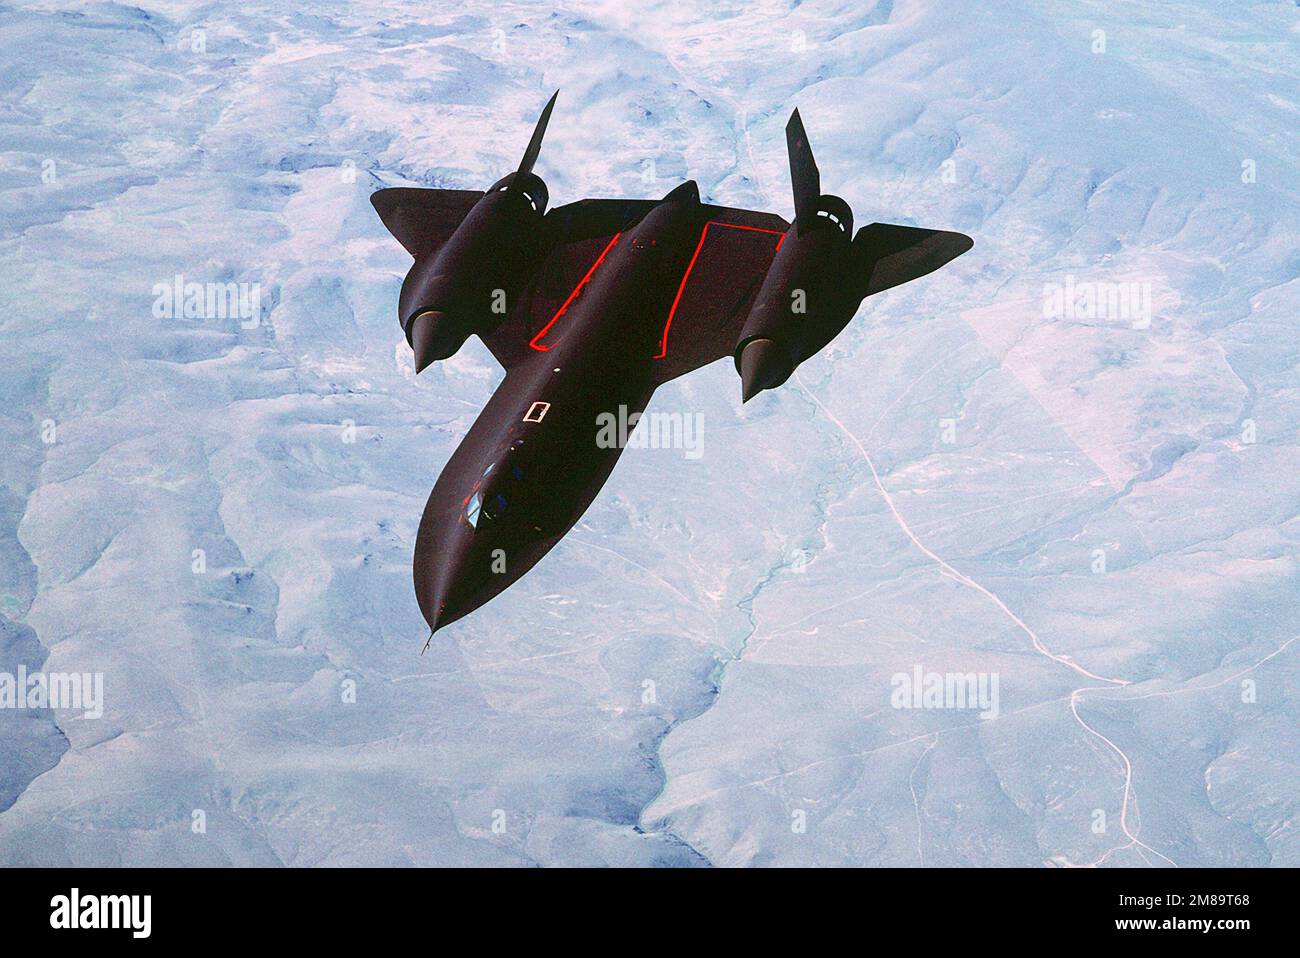 Eine Luft-Luft-Draufsicht eines strategischen Aufklärungsflugzeugs SR-71a. Die SR-71 ist inoffiziell als "Blackbird" bekannt. Basis: Luftwaffenstützpunkt Beale Bundesstaat: Kalifornien (CA) Land: Vereinigte Staaten von Amerika (USA) Stockfoto